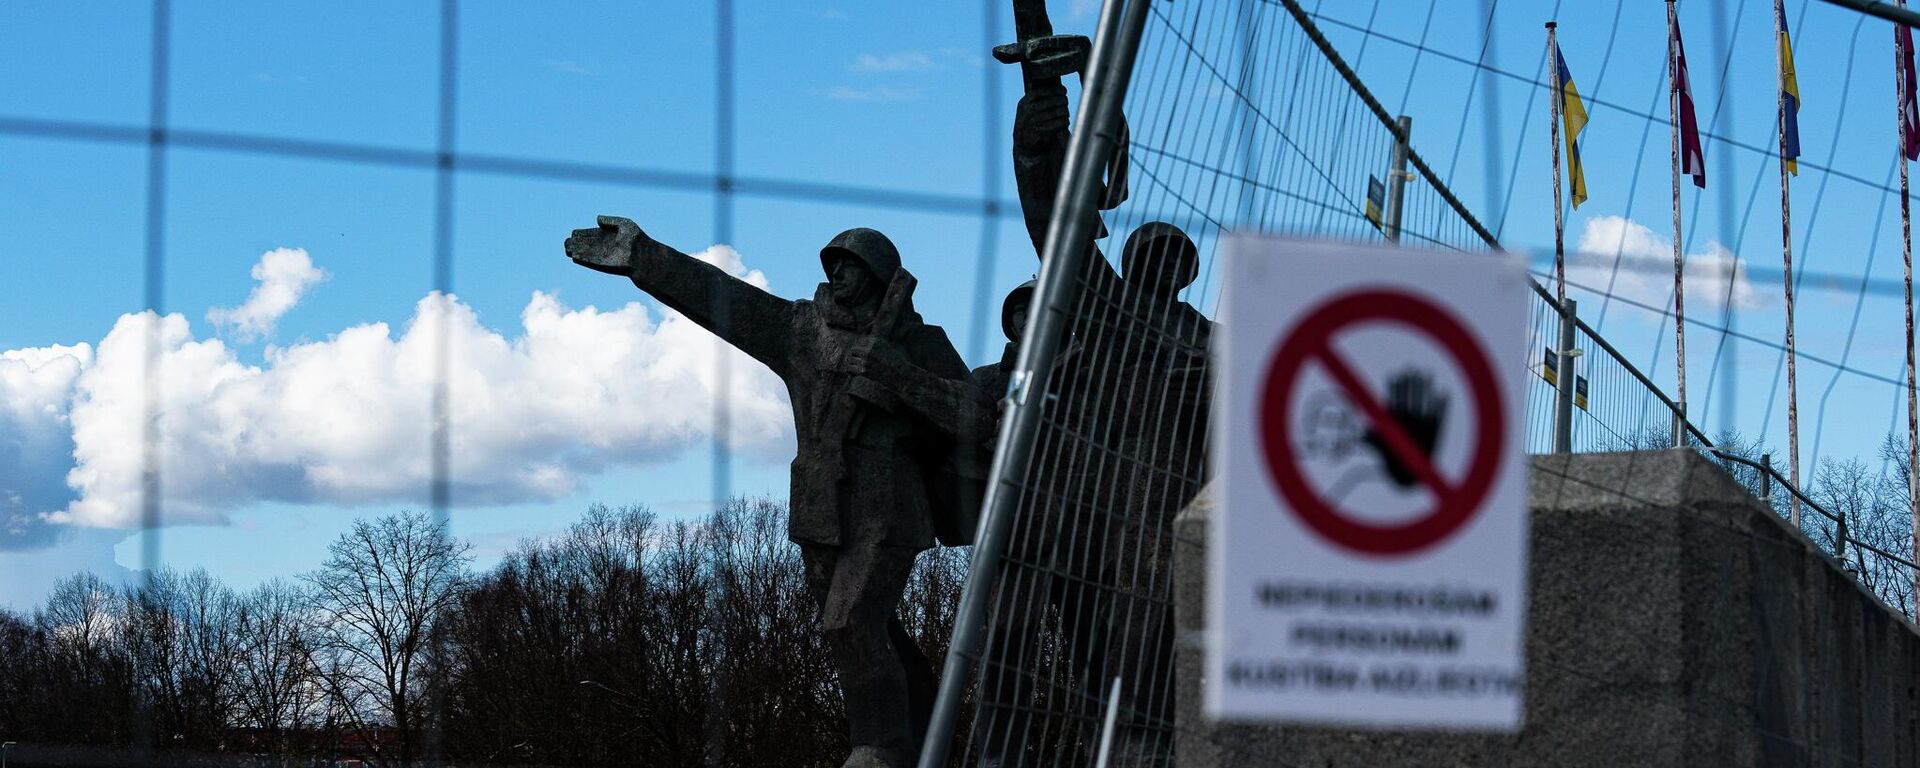 11 апреля мэр Риги принял решение оградить территорию памятника Освободителям Риги в Пардаугаве - Sputnik Латвия, 1920, 28.04.2022